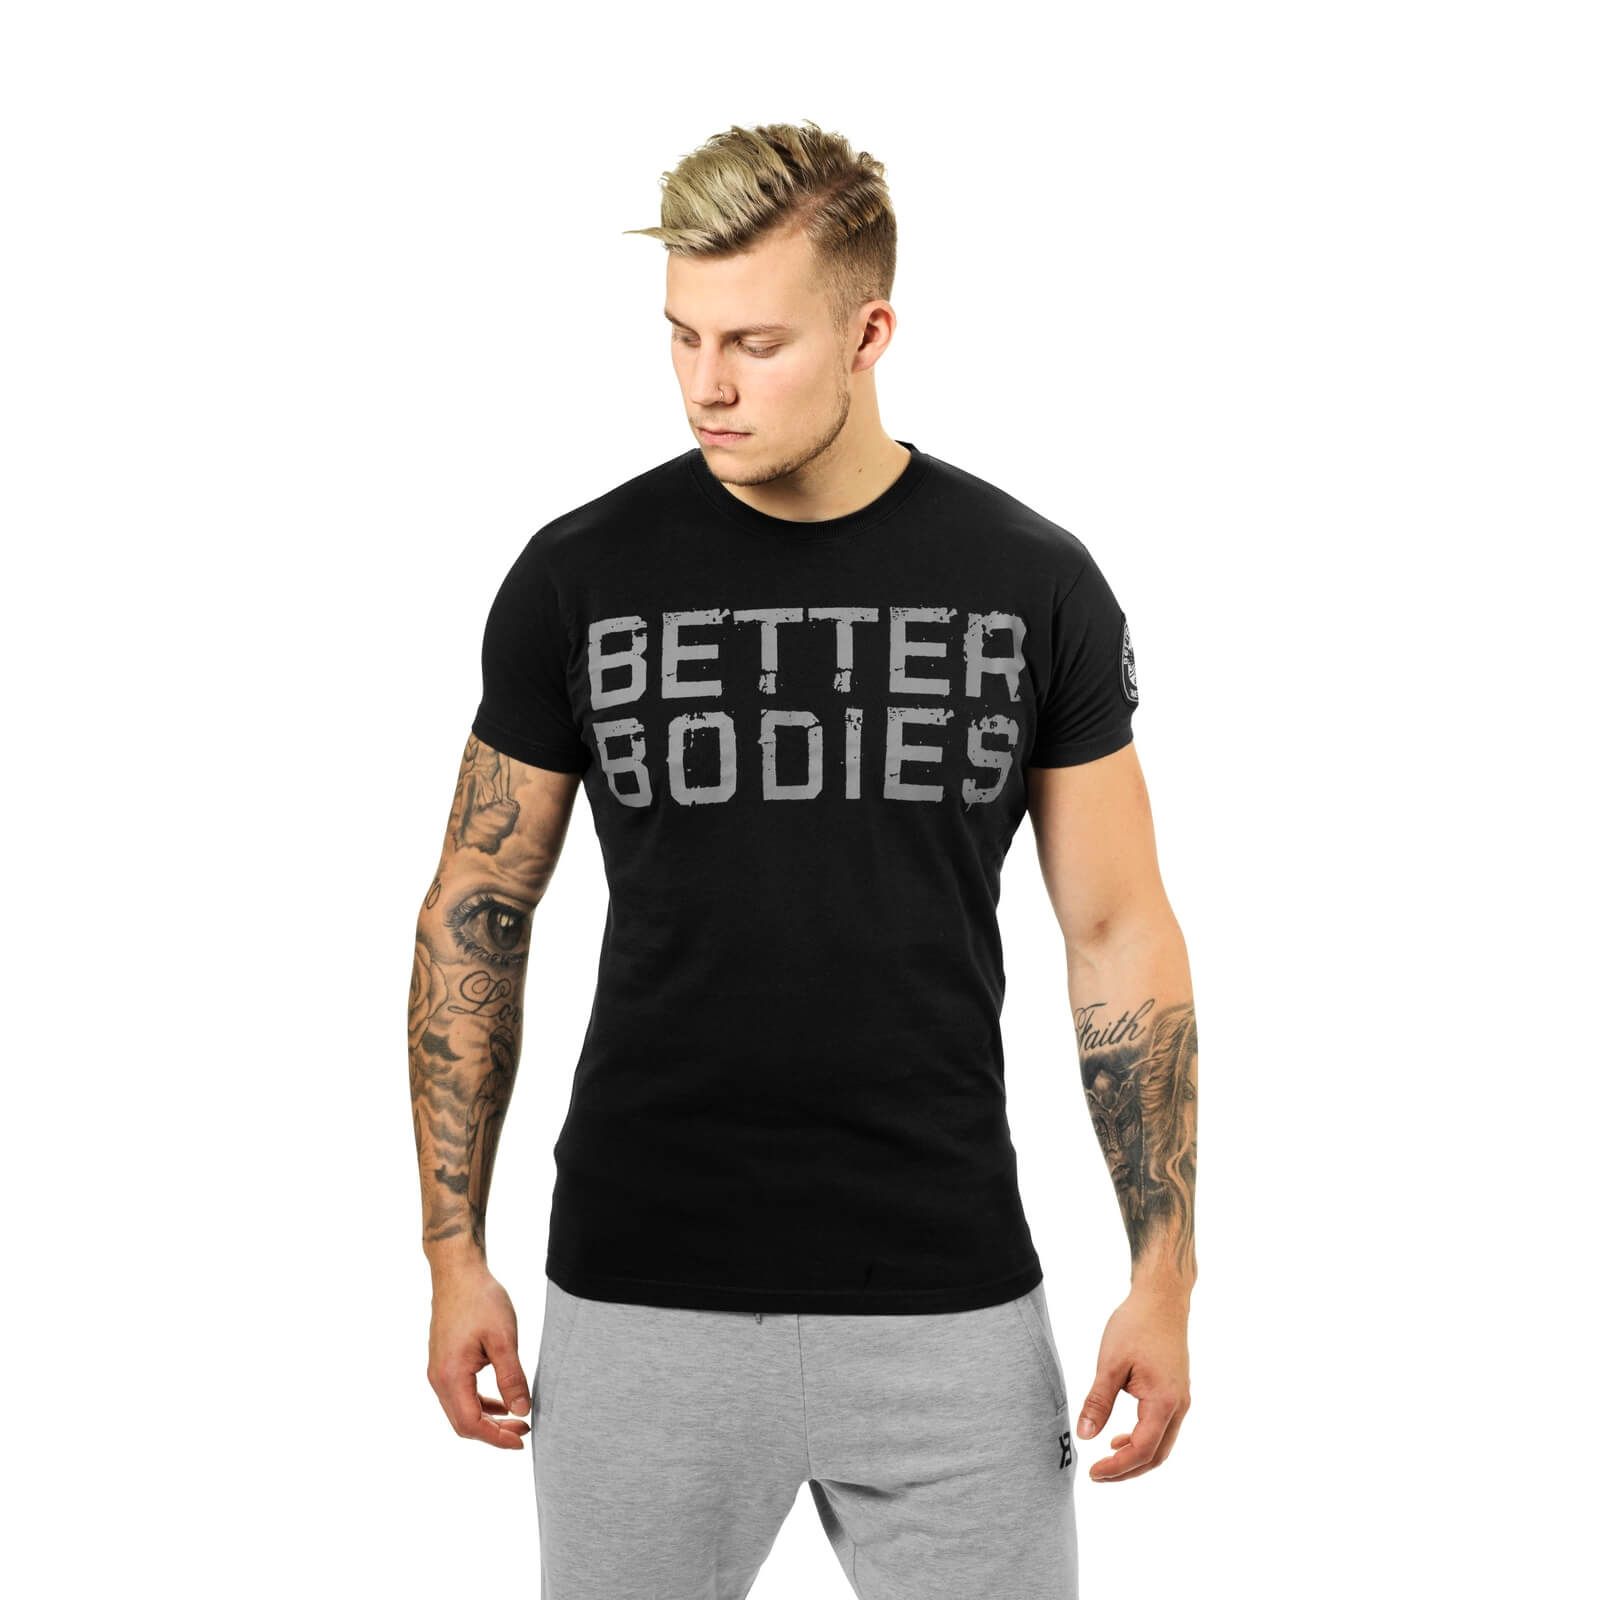 Basic Logo Tee, black, Better Bodies